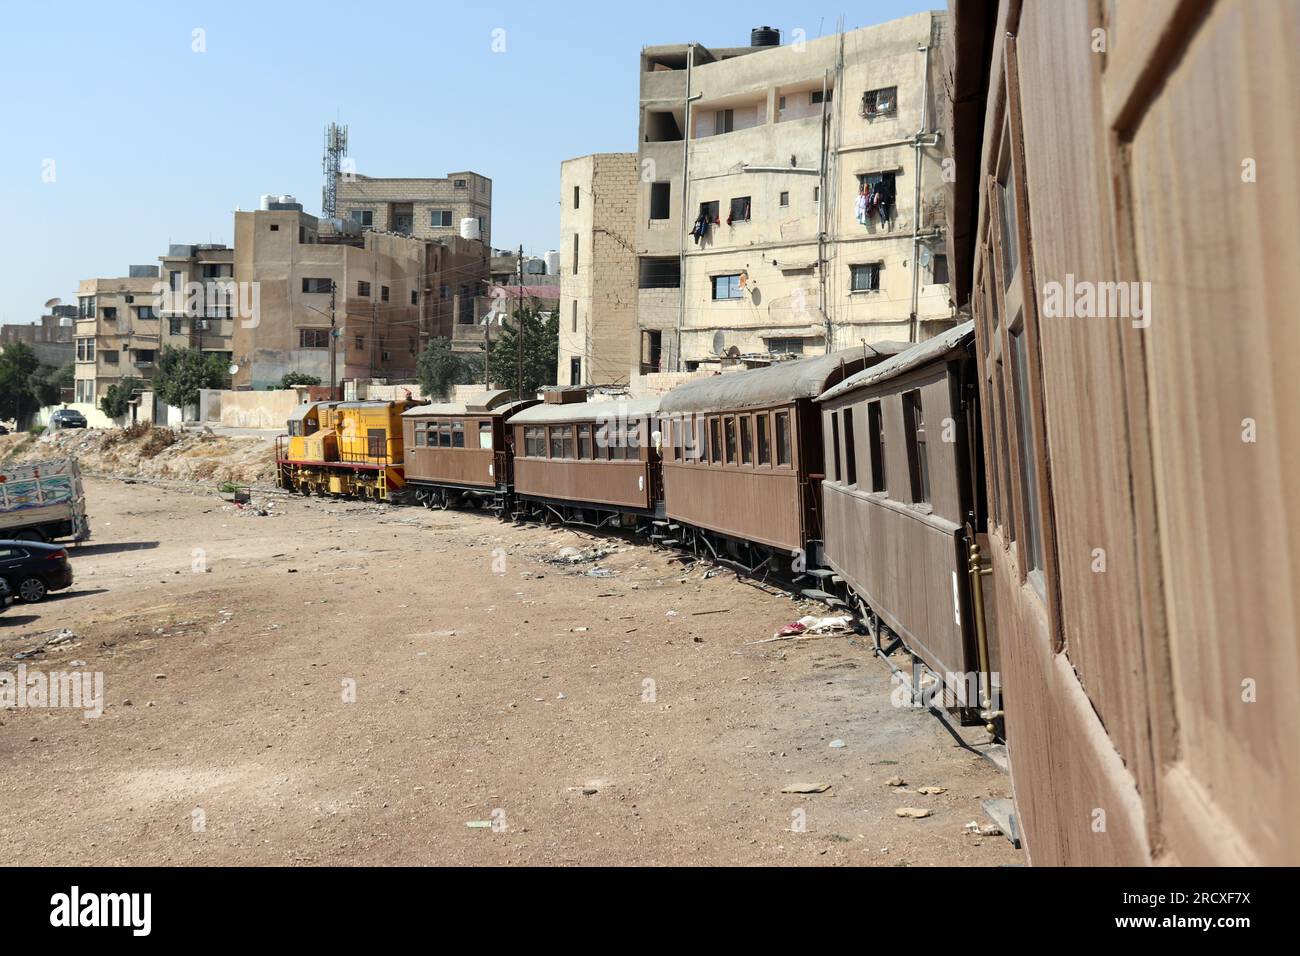 Ein Zug zwischen Häusern - eine alte türkische osmanische Dampfeisenbahn in Jordanien - Hedjaz Jordan Railway Stockfoto